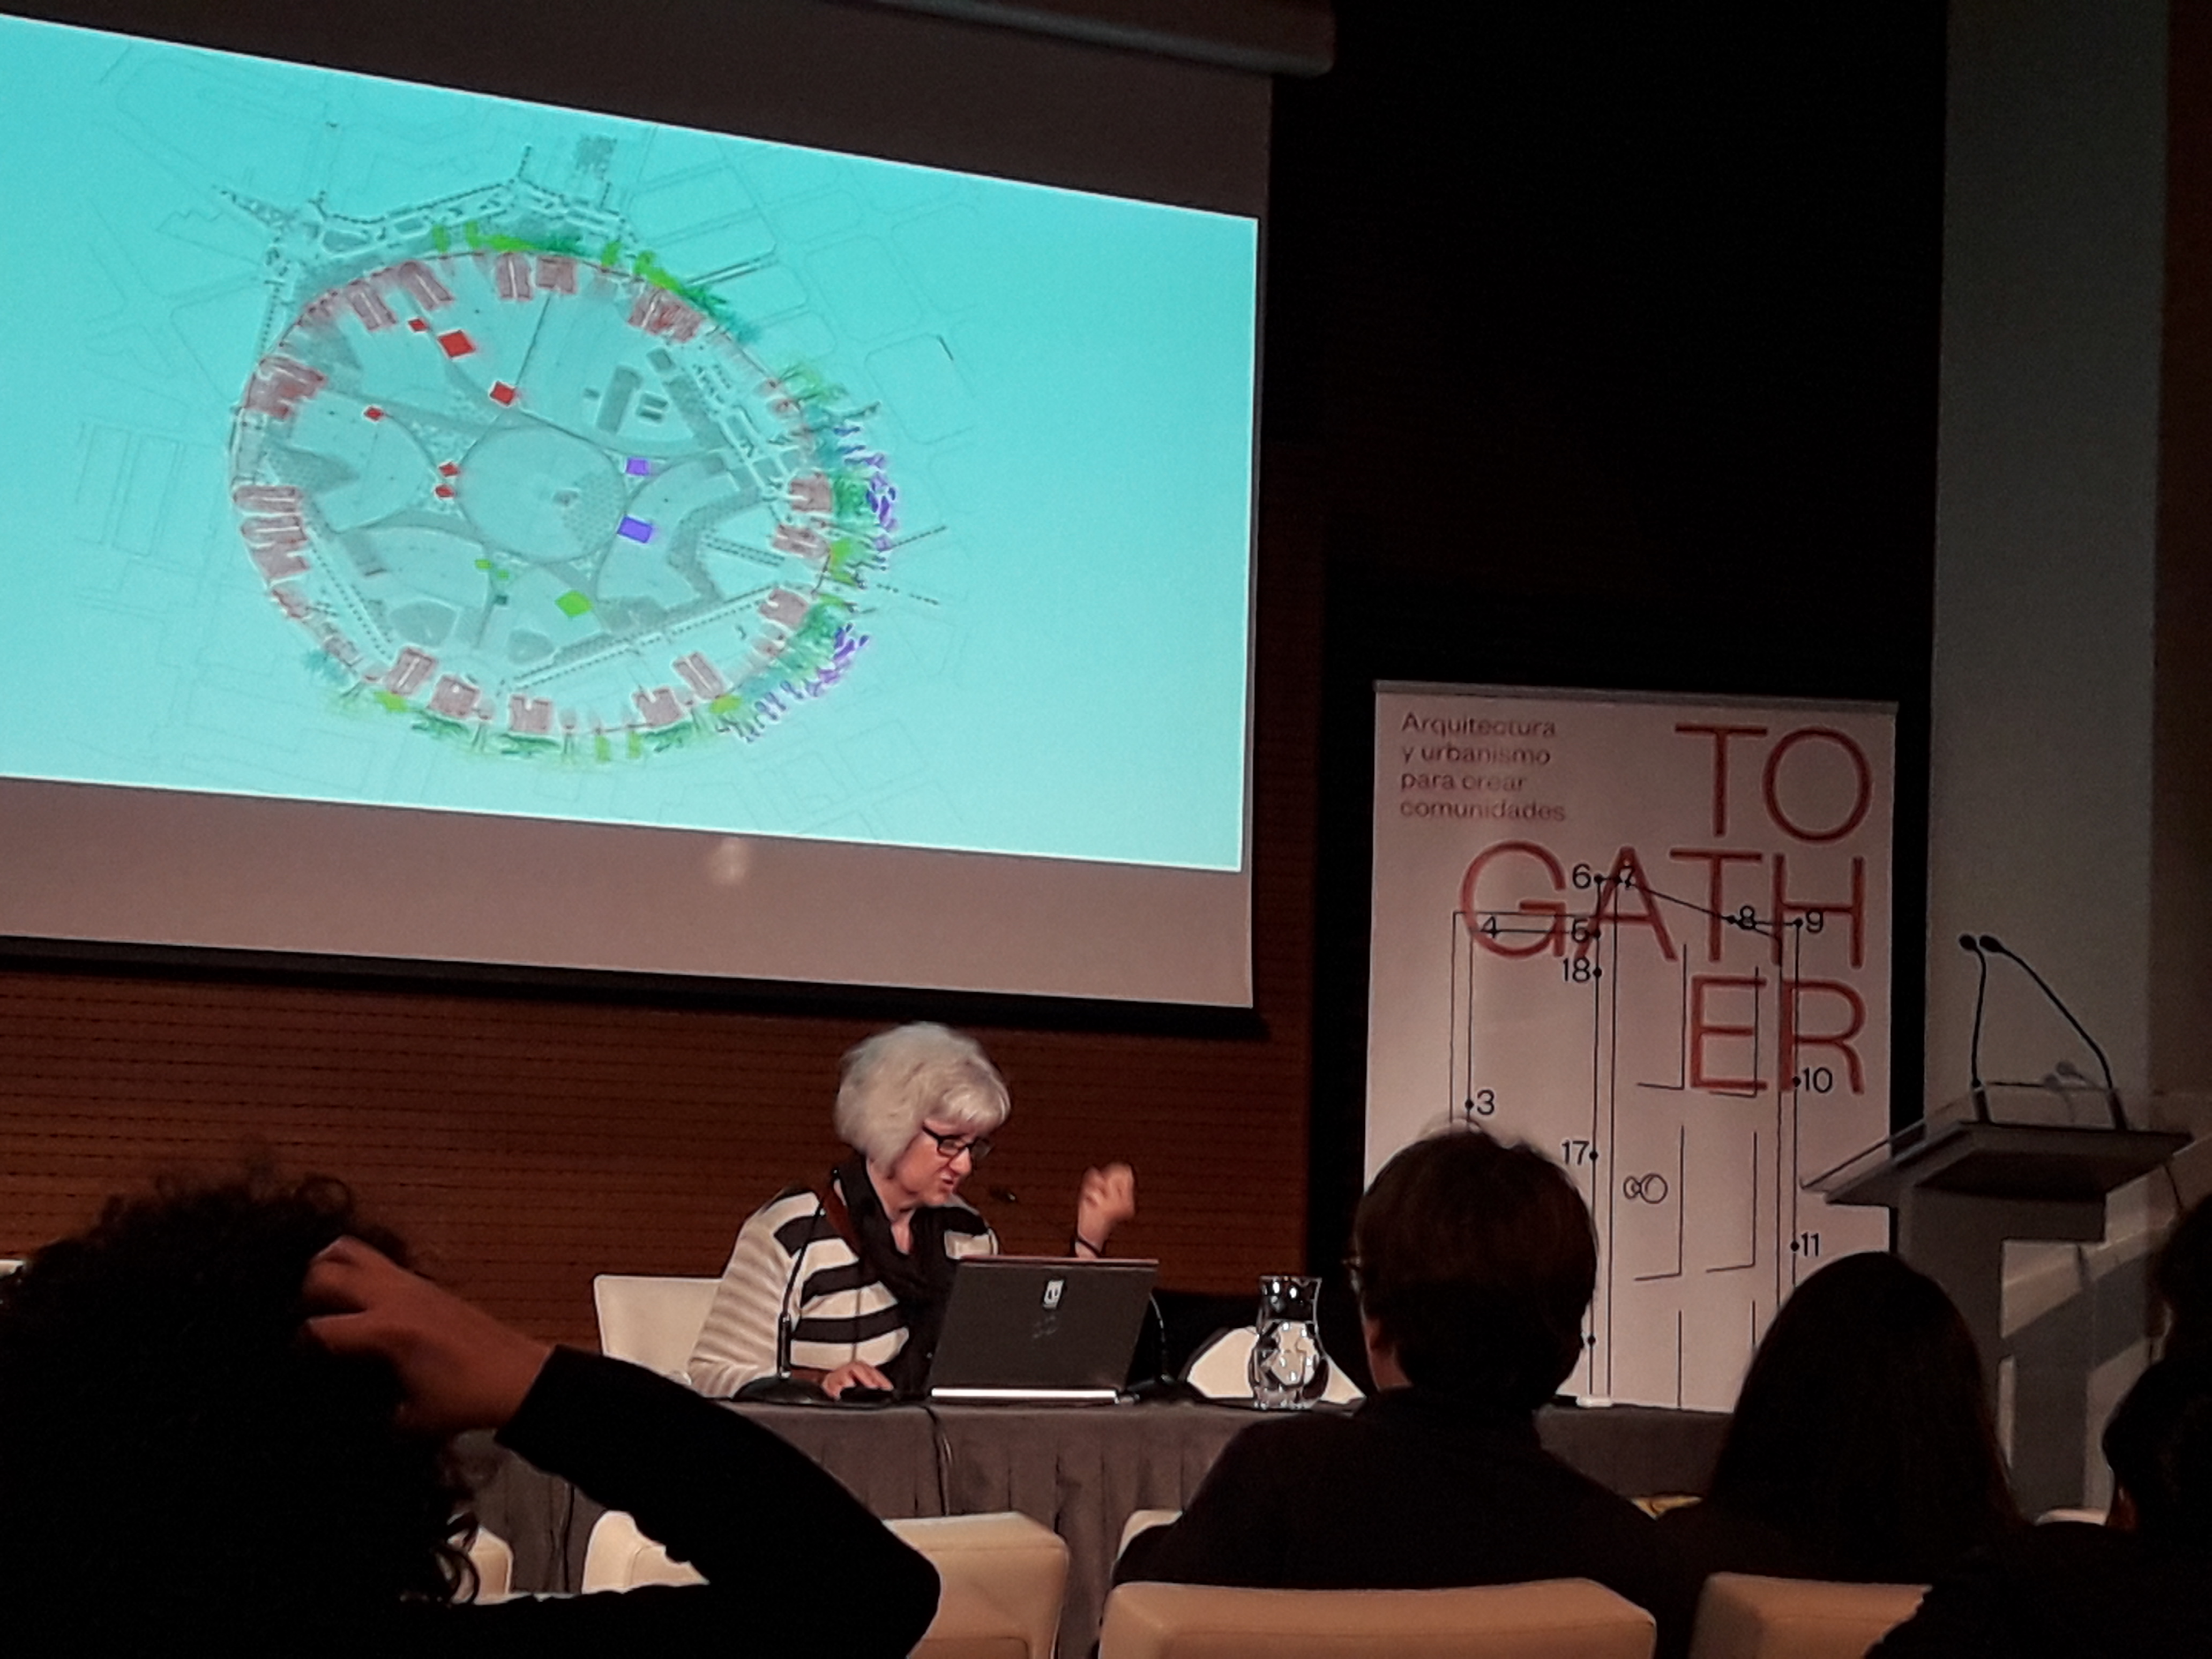 Imagen del seminario 'Juntarse' celebrado en Madrid los días 4,5 y 6 de marzo sobre urbanismo y soledades